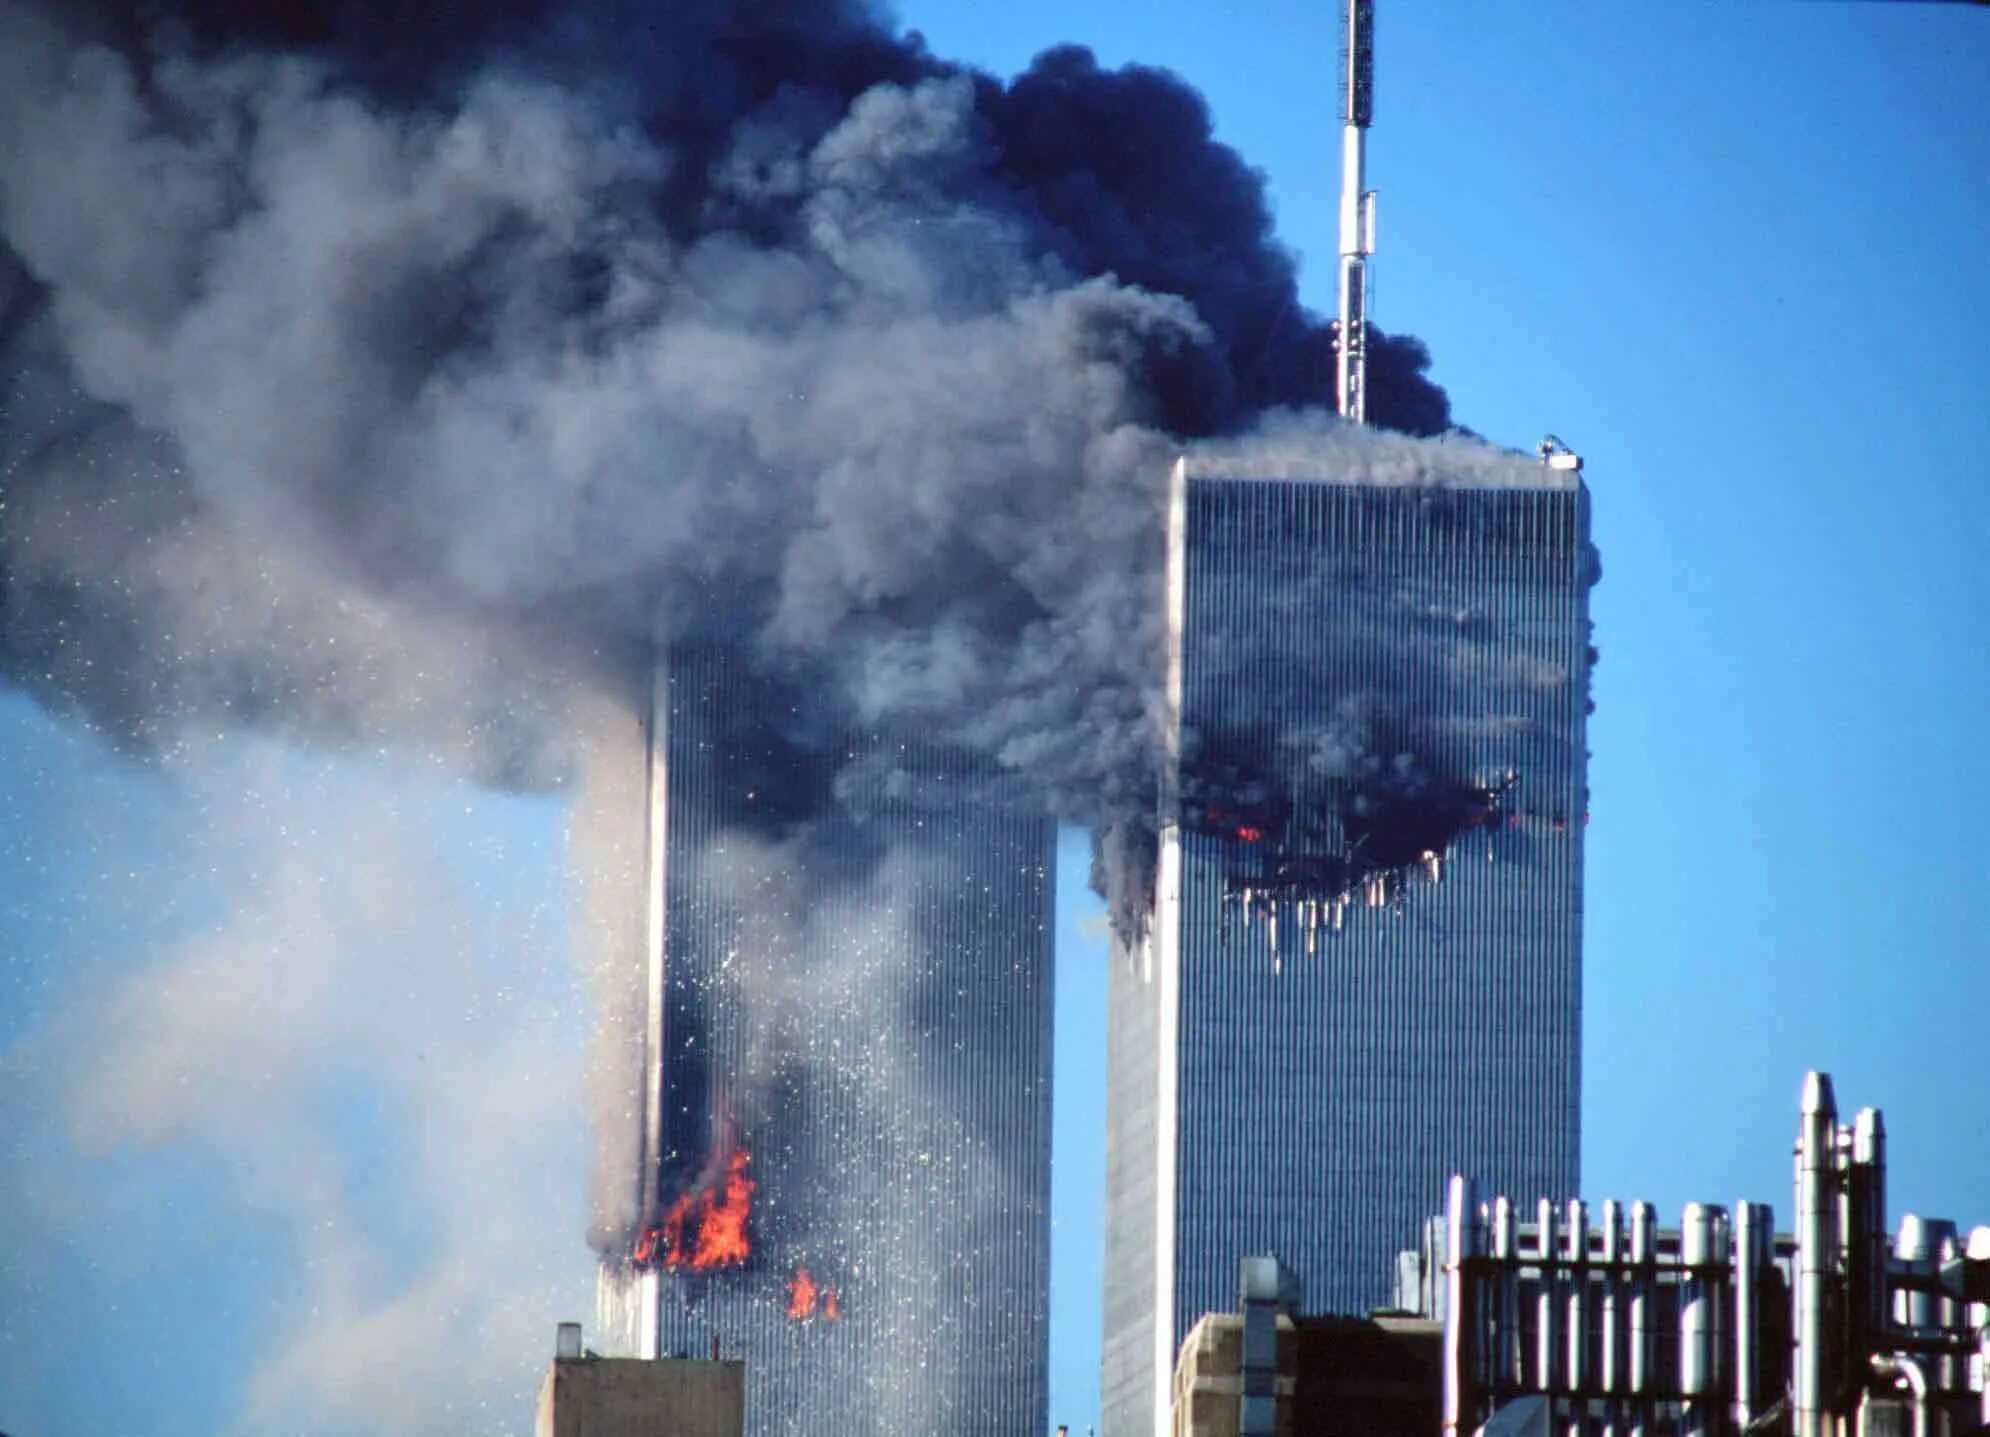 Башни-Близнецы 11 сентября 2001. Аль Каида 11 сентября 2001. ВТЦ Нью-Йорк башни Близнецы. Теракты 11 сентября 2001 года.